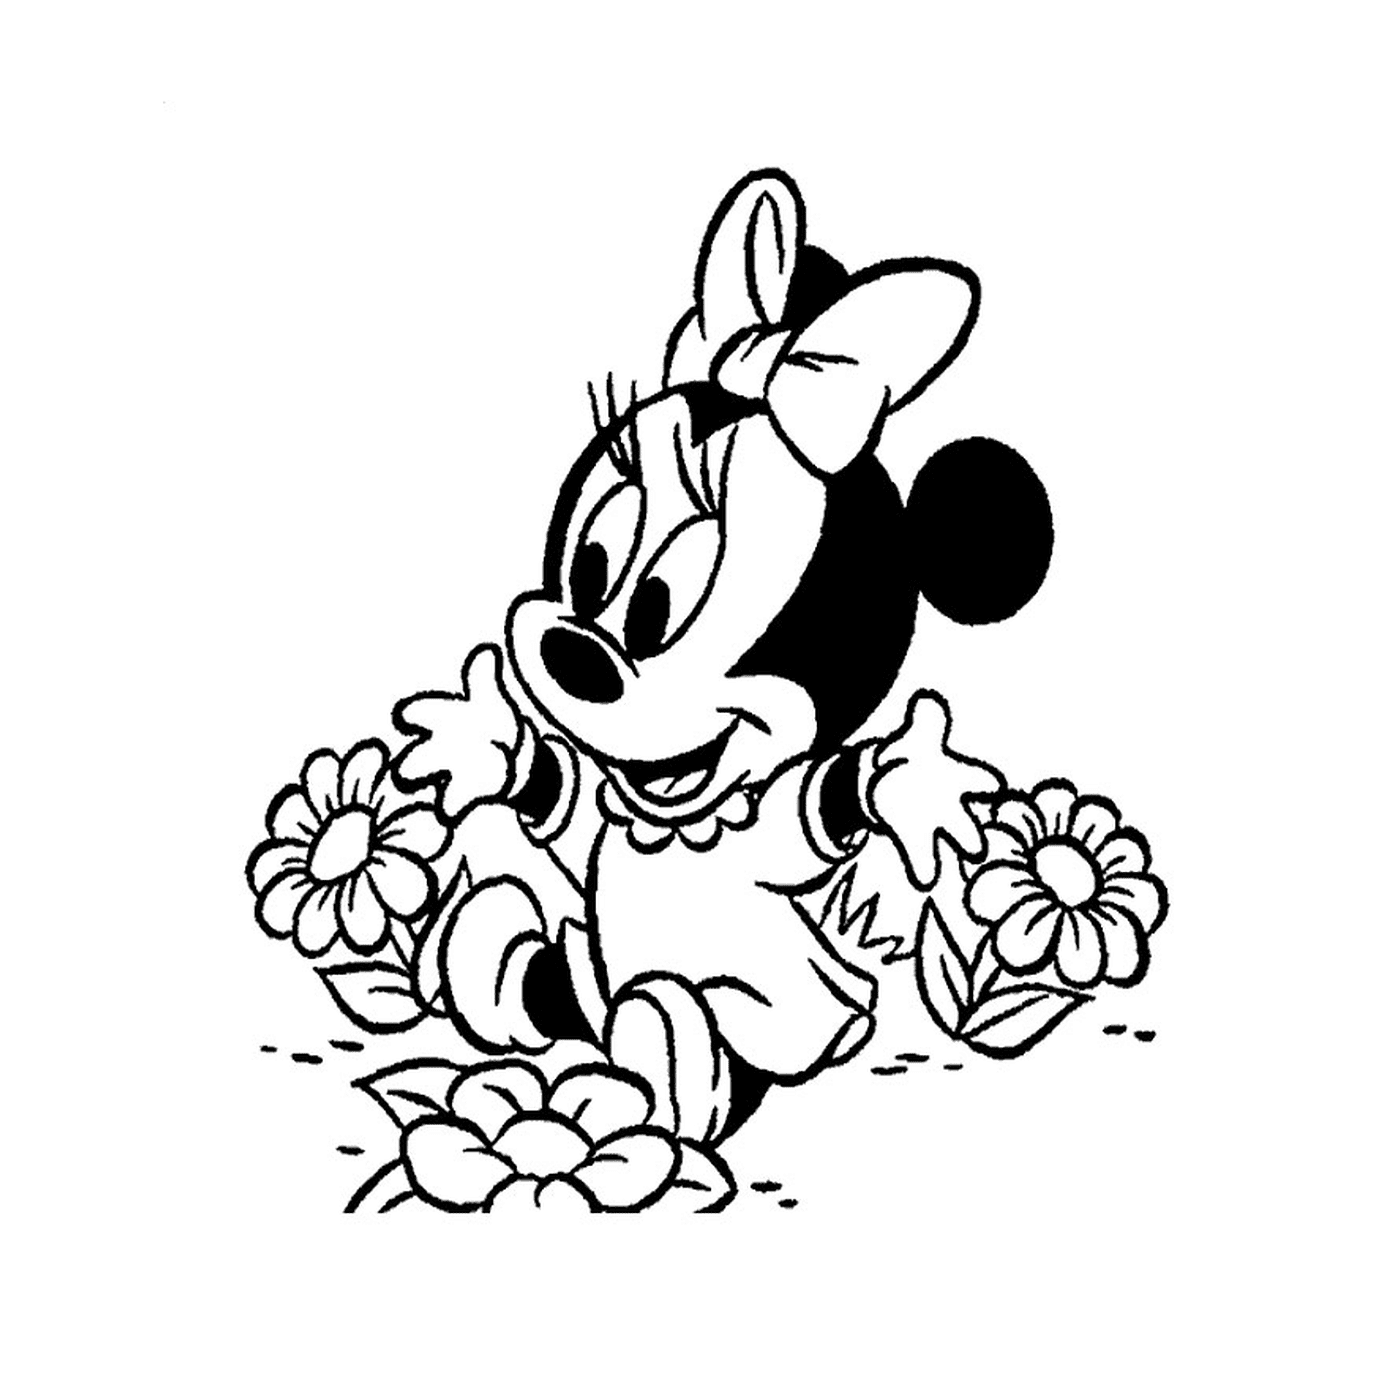  Minnie Mouse bebé sentado en flores 